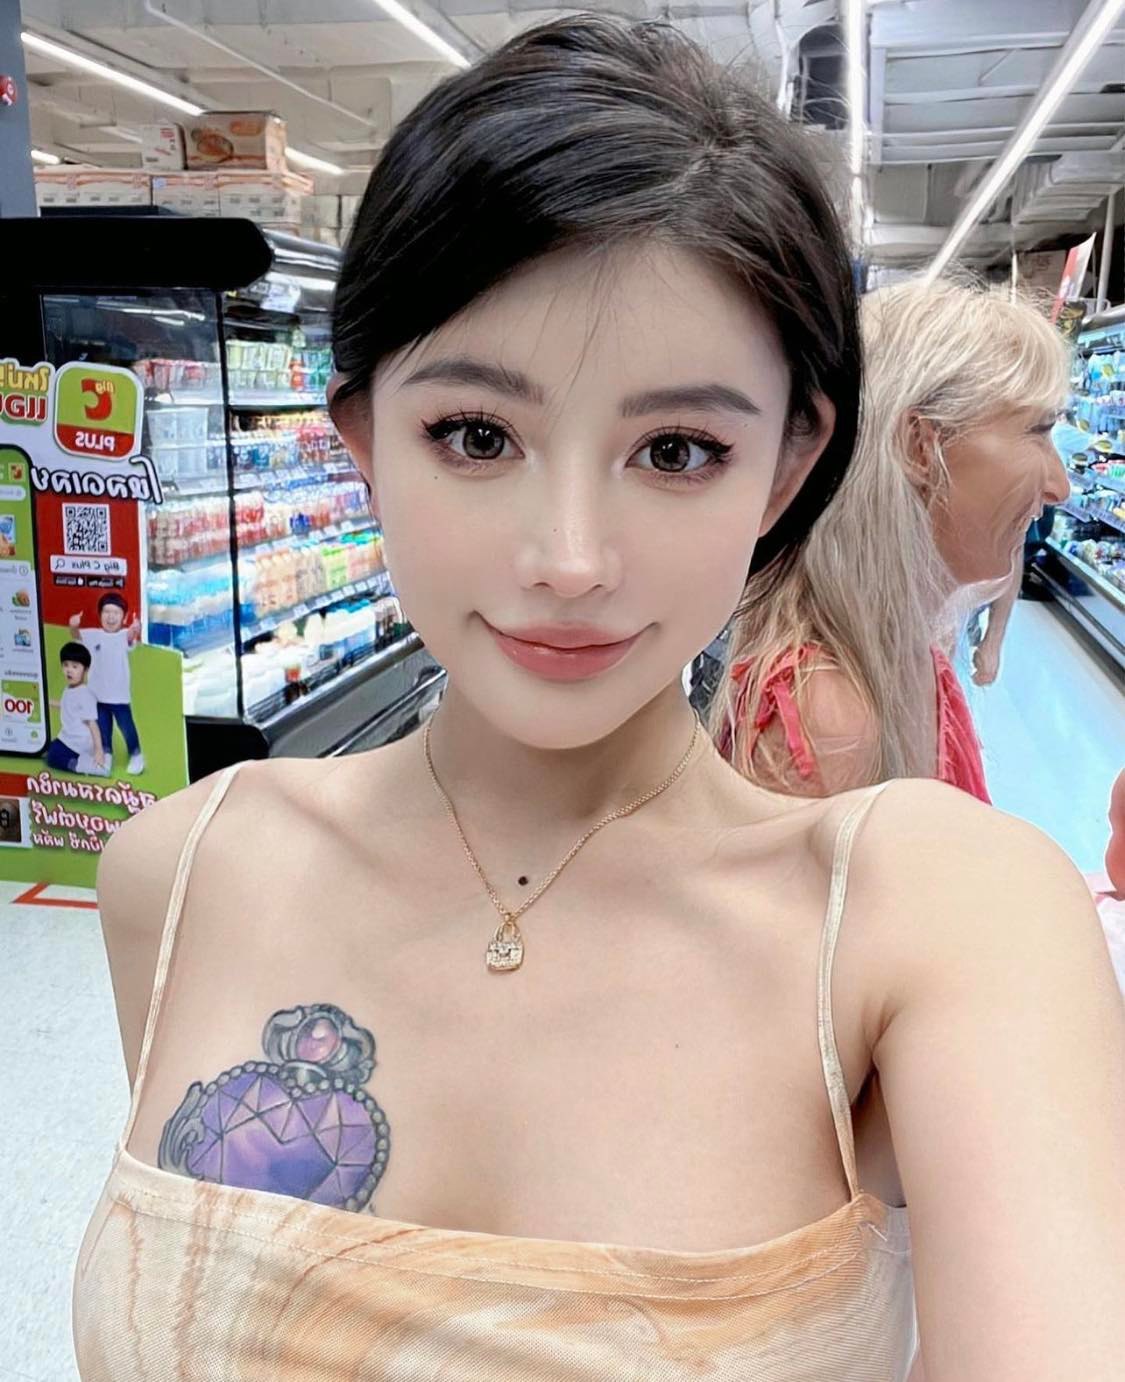 Người đẹp Trung Quốc thu hút ánh nhìn ở siêu thị Thái Lan với mẫu váy bodycon "như vẽ lên thân".